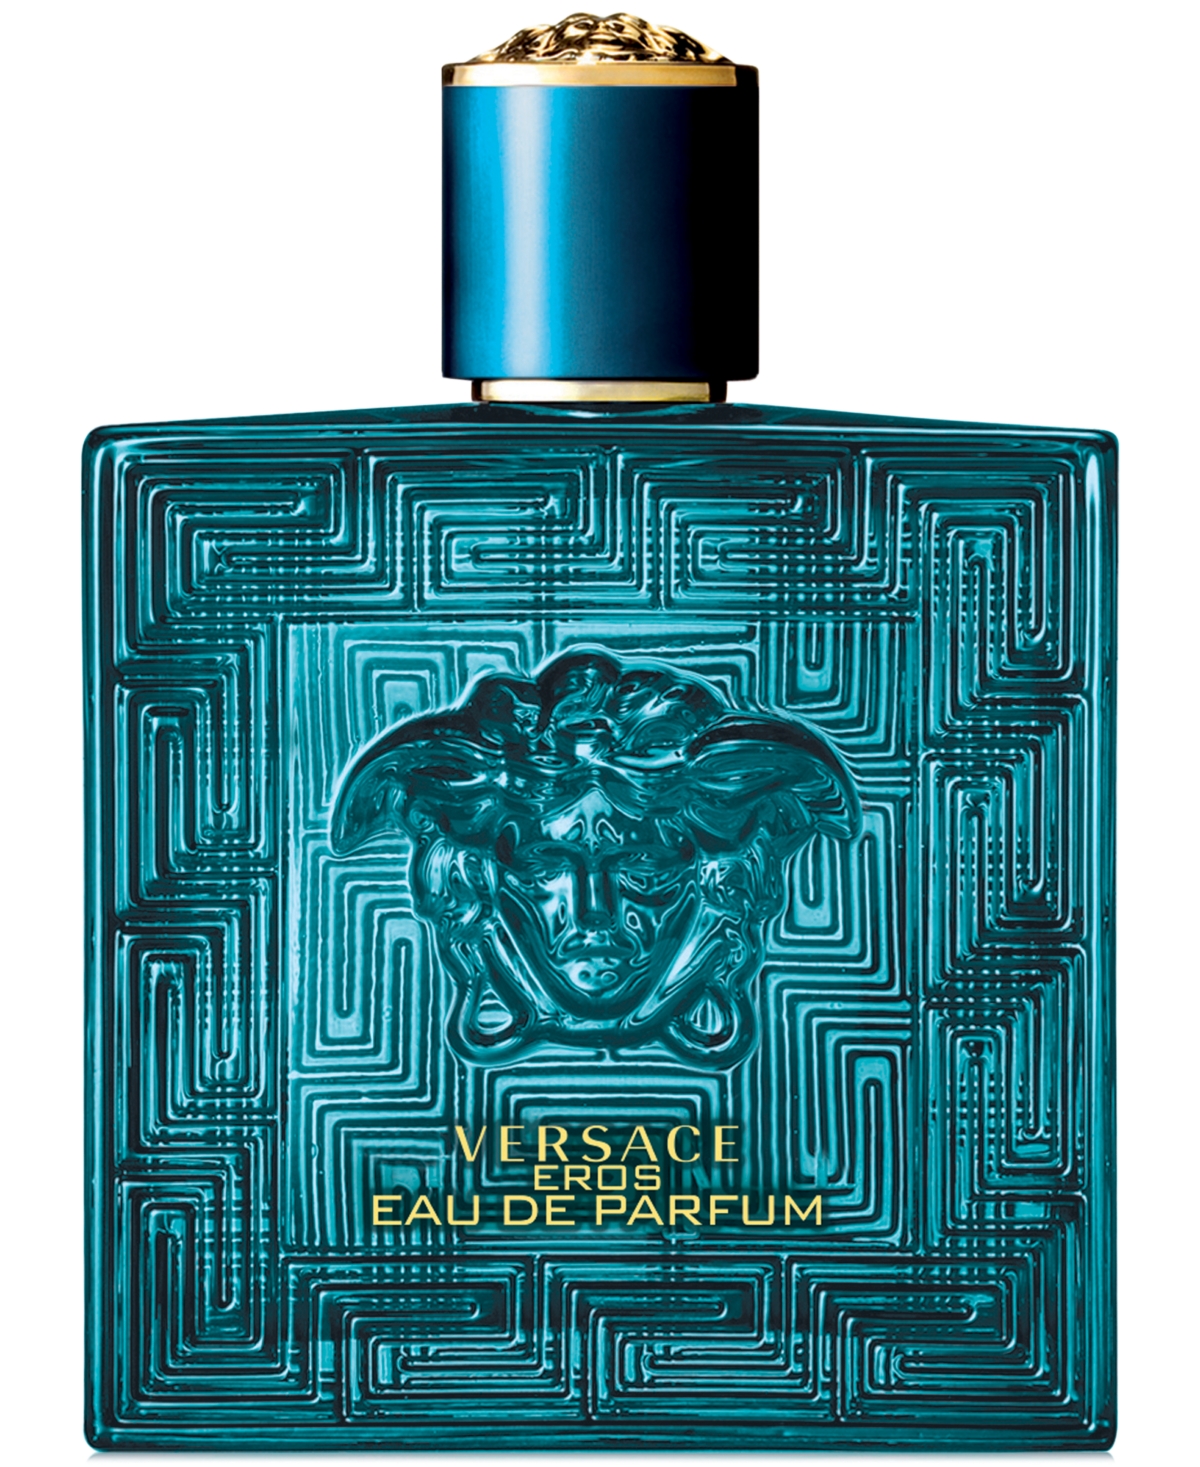 Versace Men's Eros Eau de Parfum Spray, 3.4-oz.